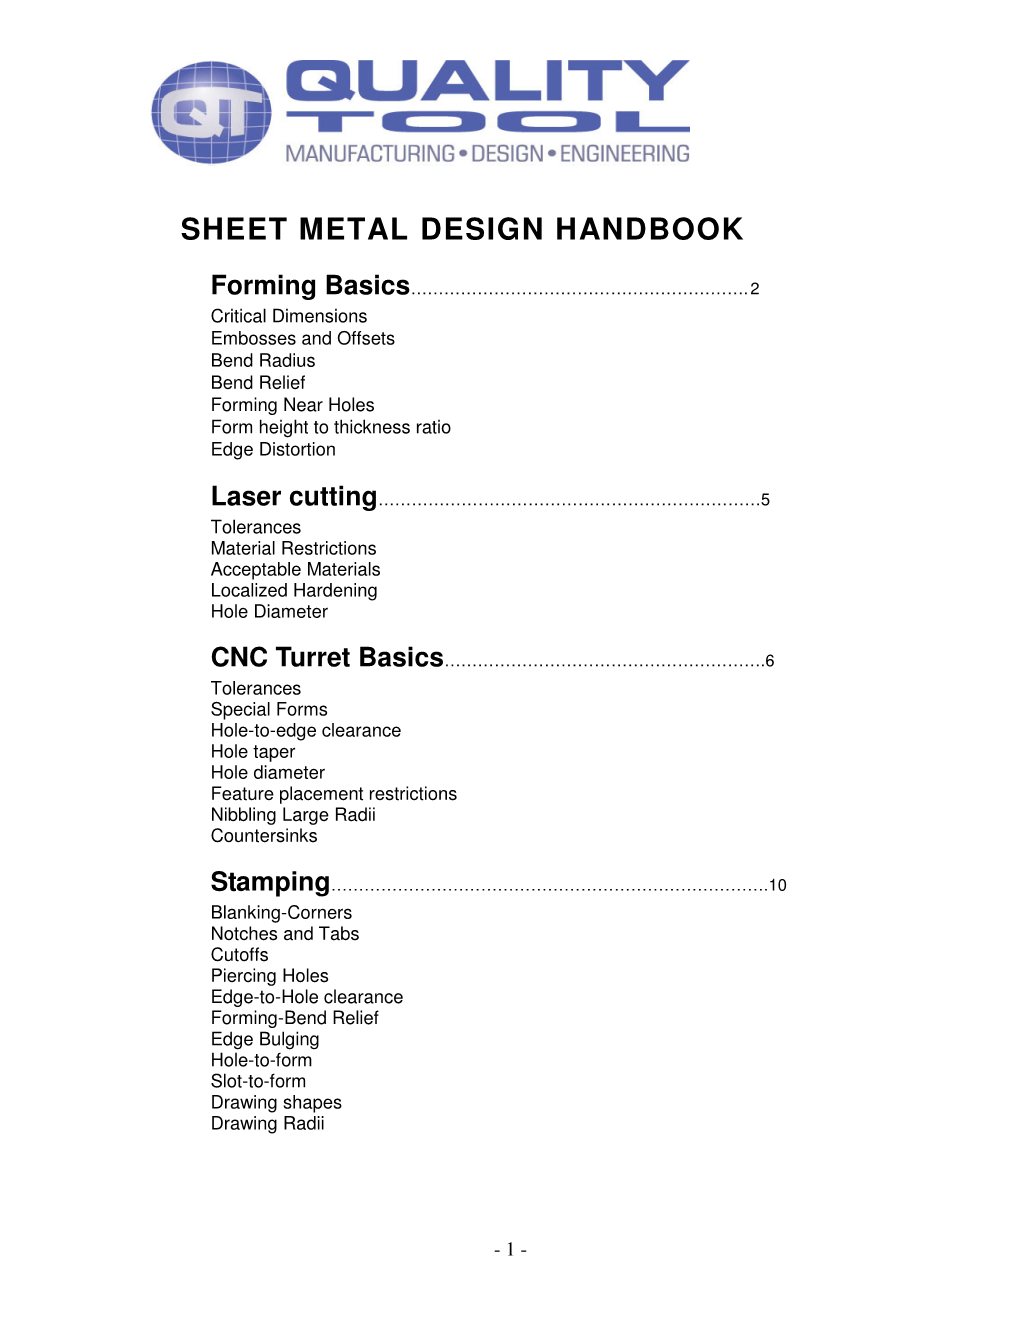 Sheet Metal Design Handbook